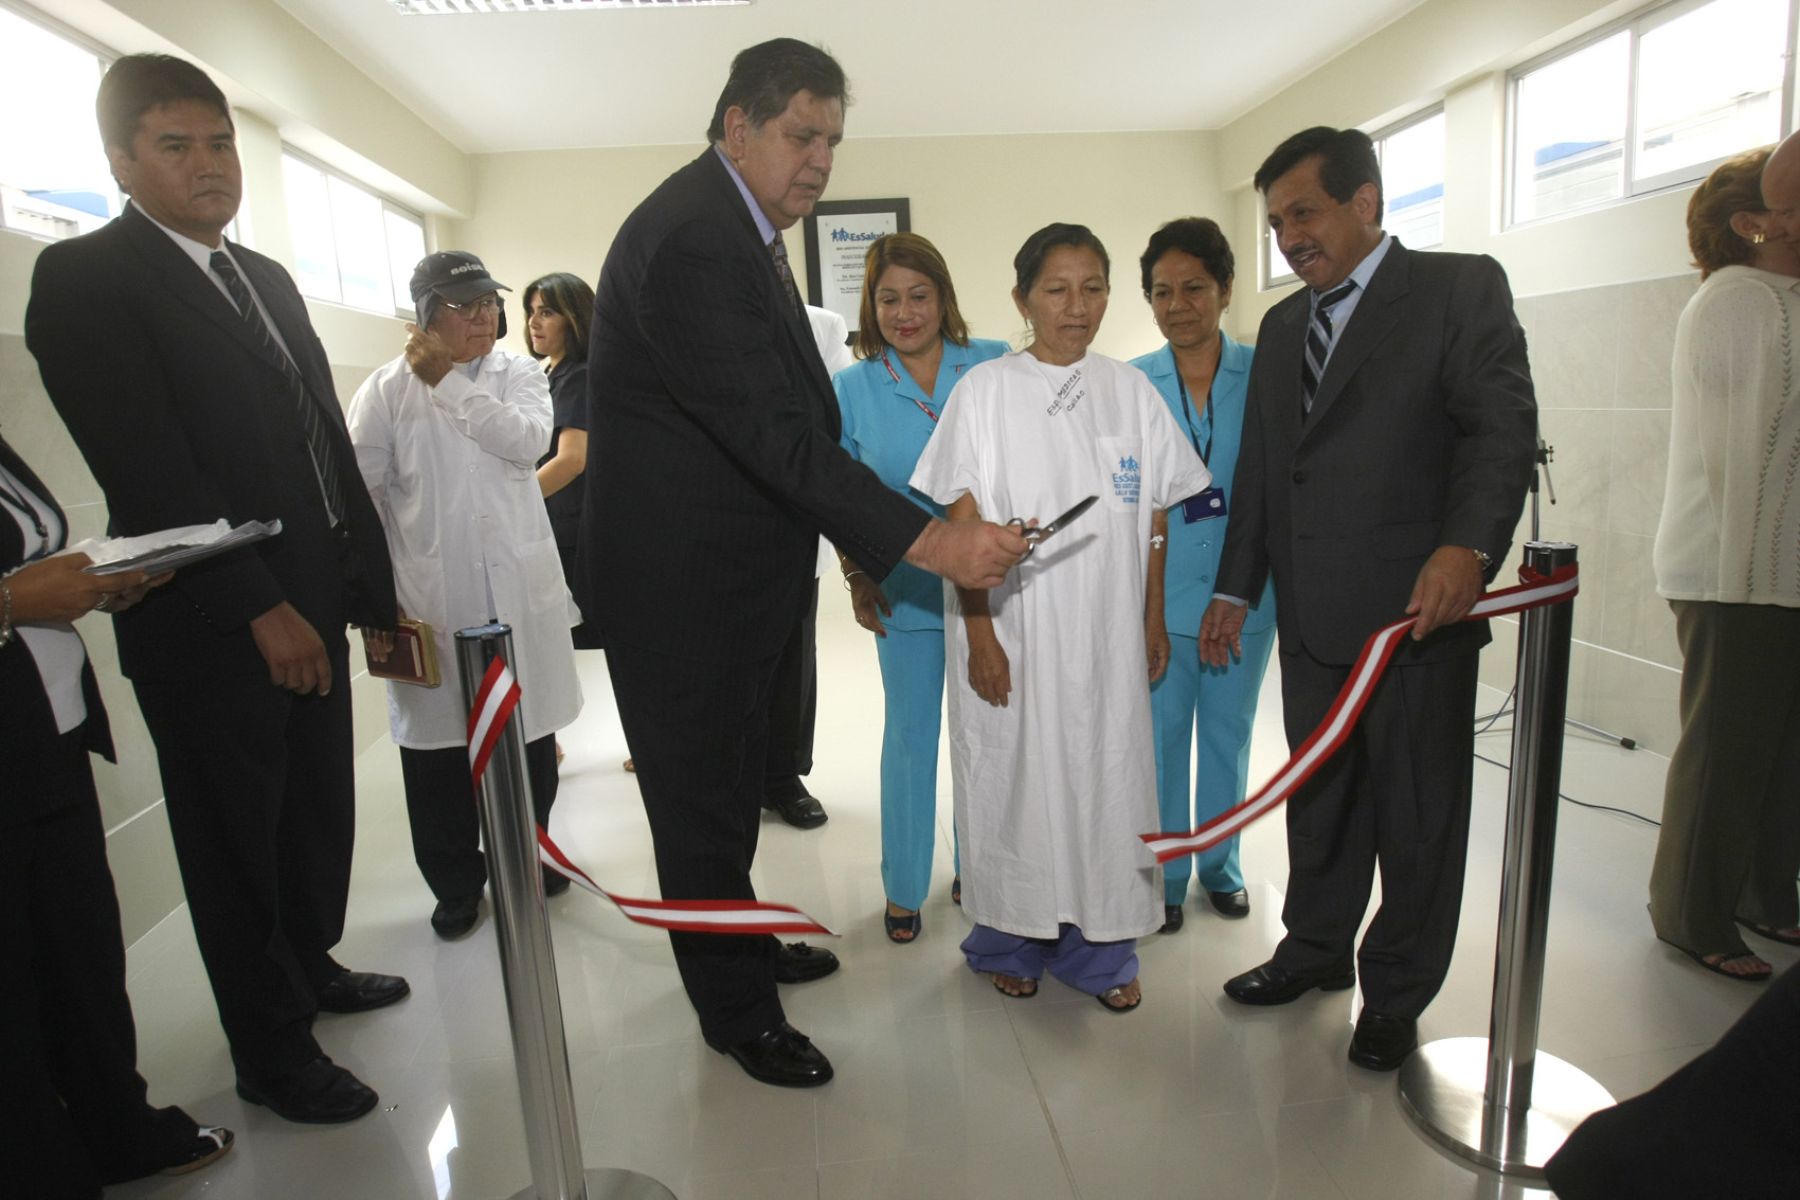 El presidente Alan García inauguró esta mañana el pabellón de especialidades médicas y quirúrgicas del hospital Sabogal. Foto: ANDINA/Juan Carlos Guzmán Negrini.